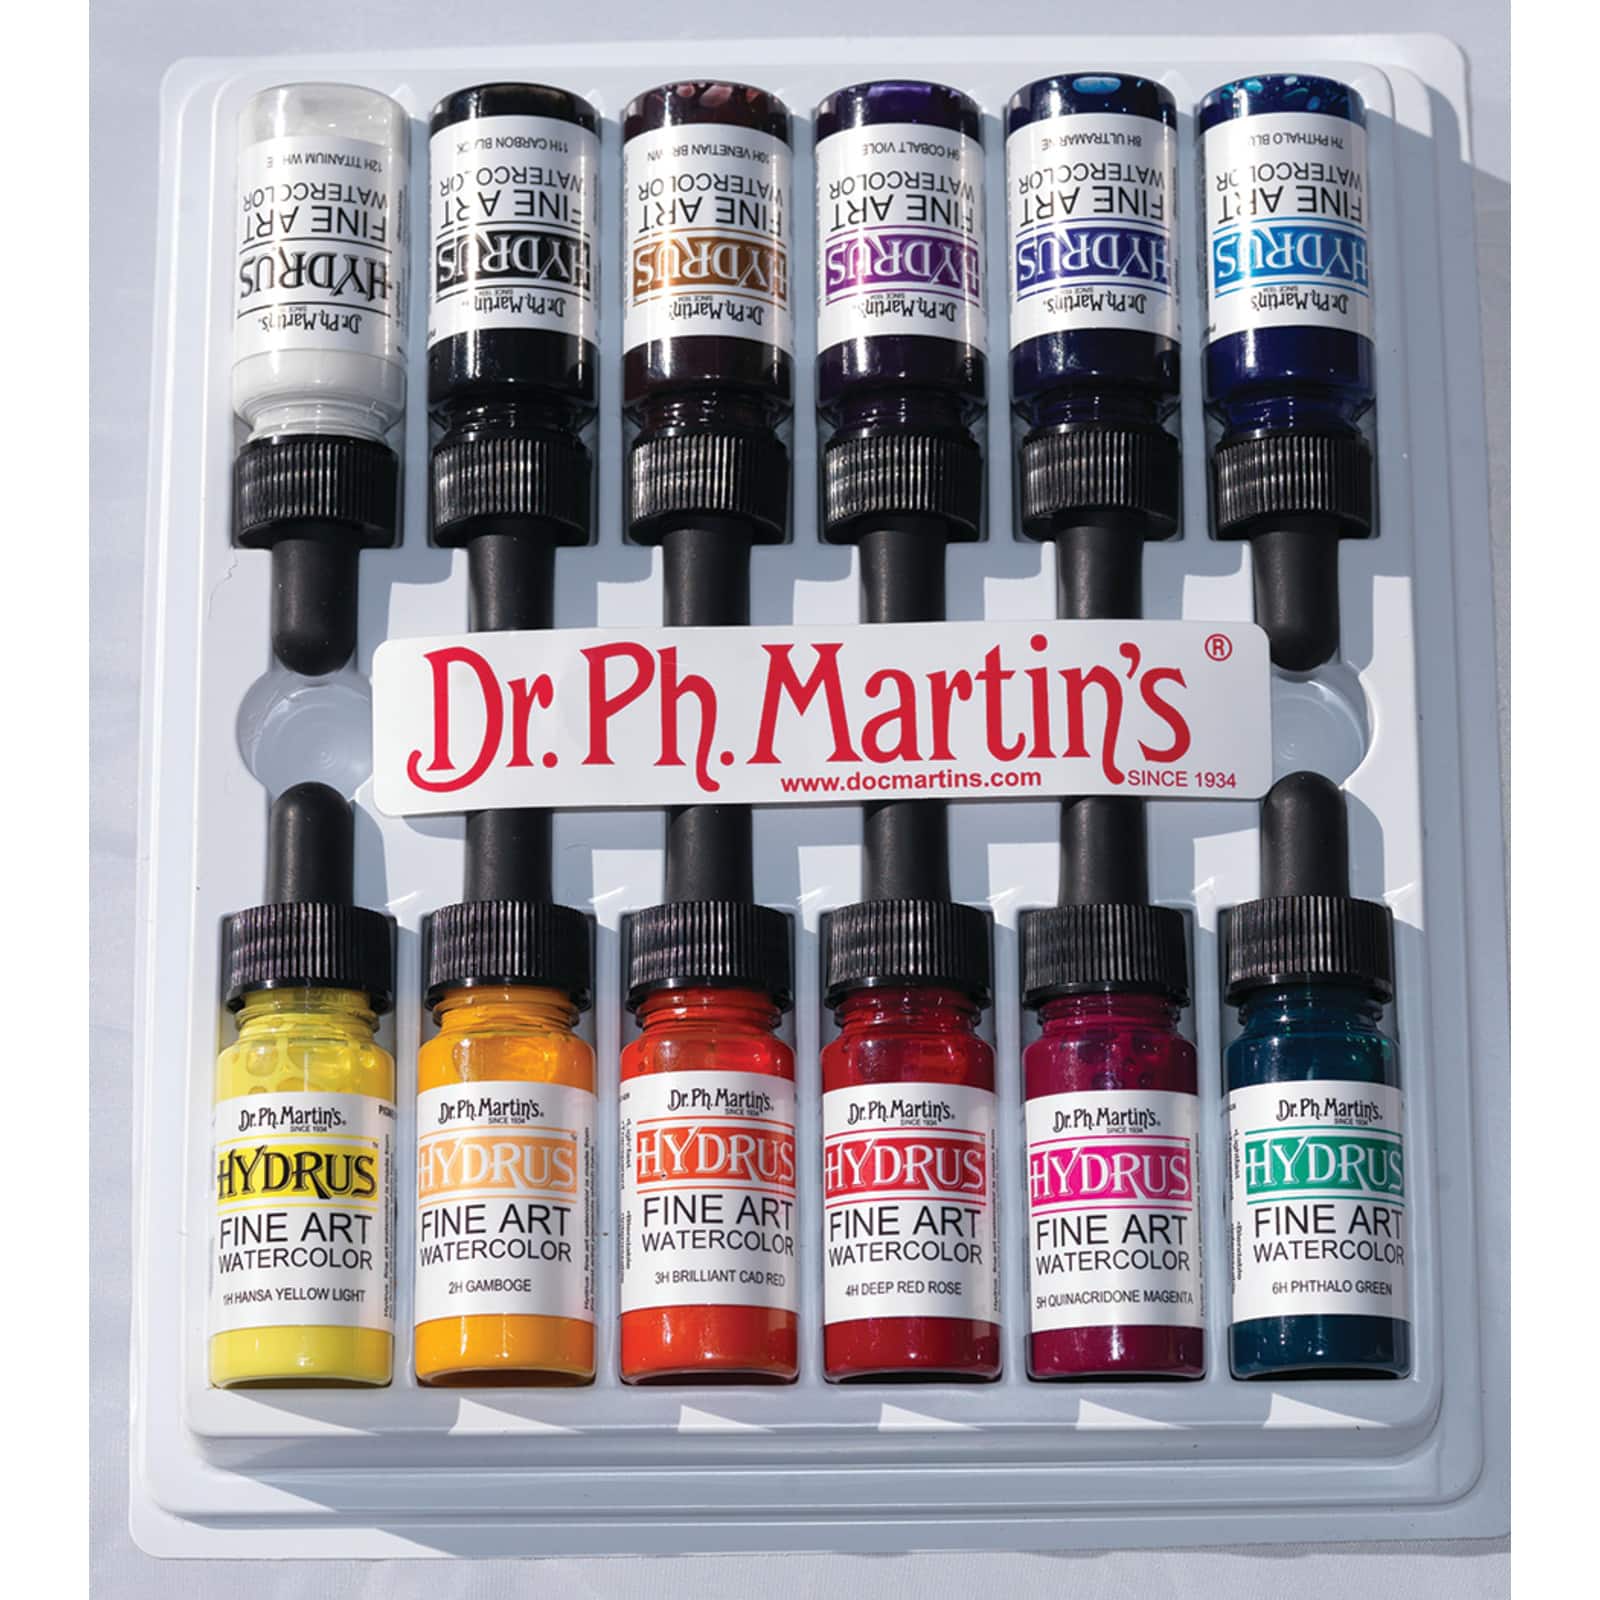 Hydrus Fine Art Watercolor, 0.5 oz, Set 1 – Dr. Ph. Martin's